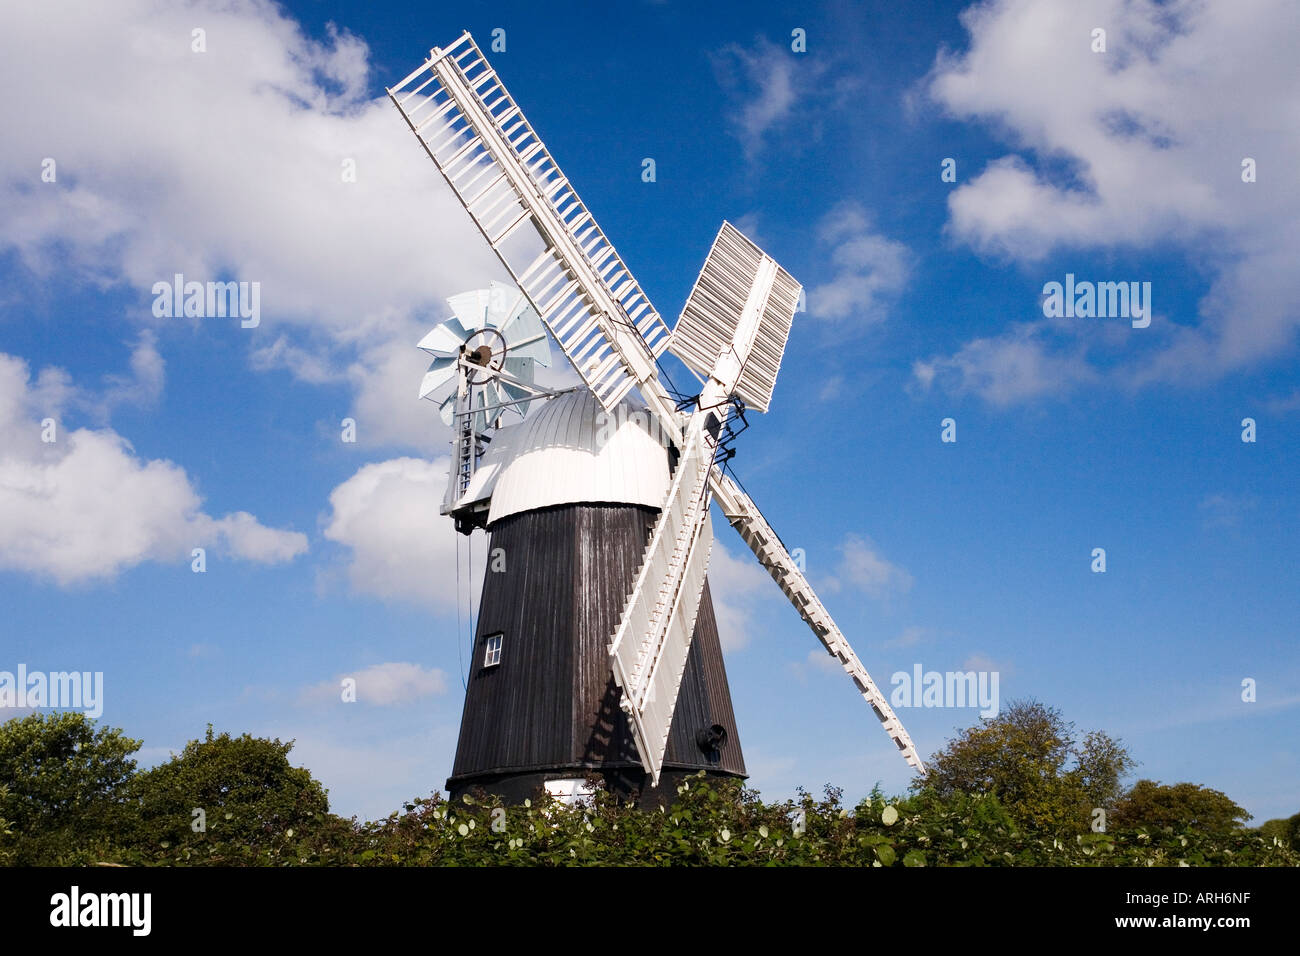 Restaurierte funktionierende Windmühle im Dorf Pakenham in Suffolk East Anglia England UK United Kingdom GB Großbritannien britische Inseln Stockfoto